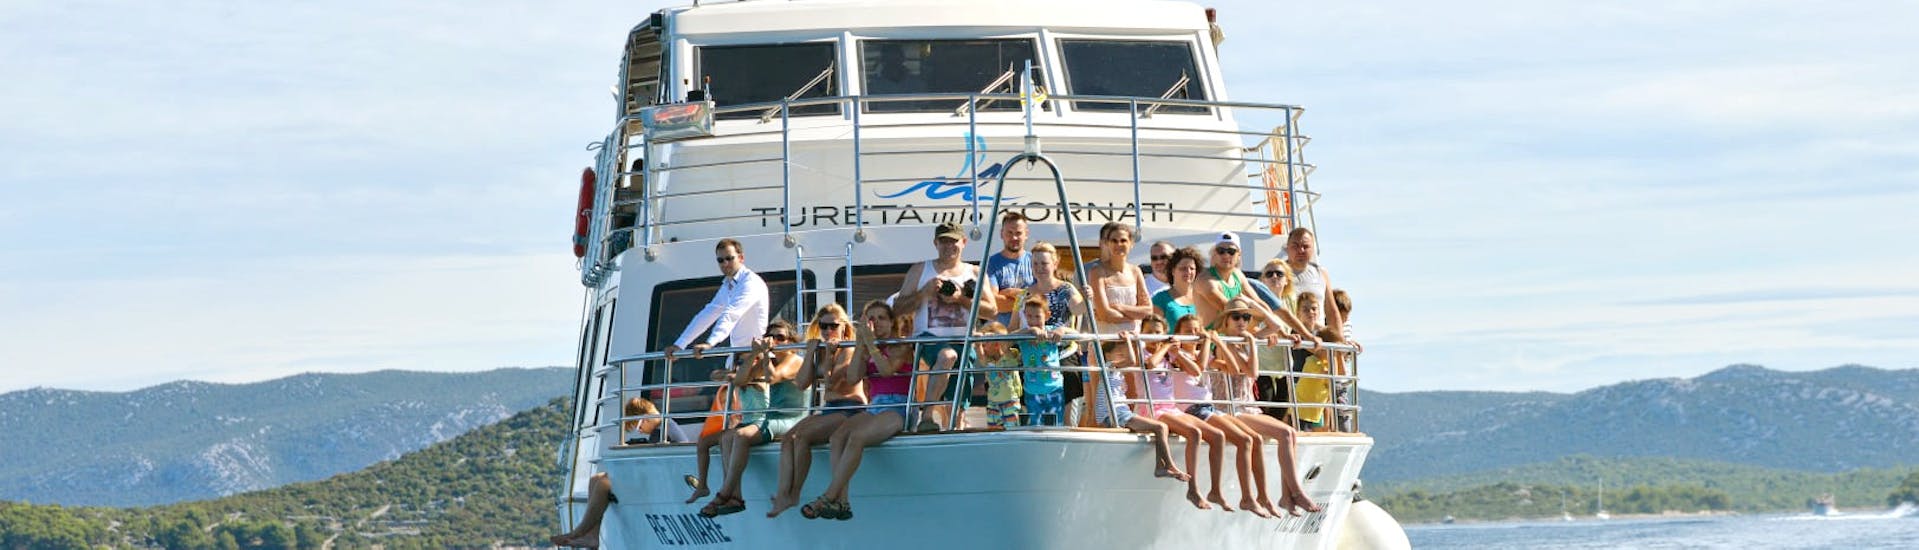 Personas en el barco de Tureta Tours Murter durante el Paseo en barco en torno al Parque Nacional de Kornati desde Murter.